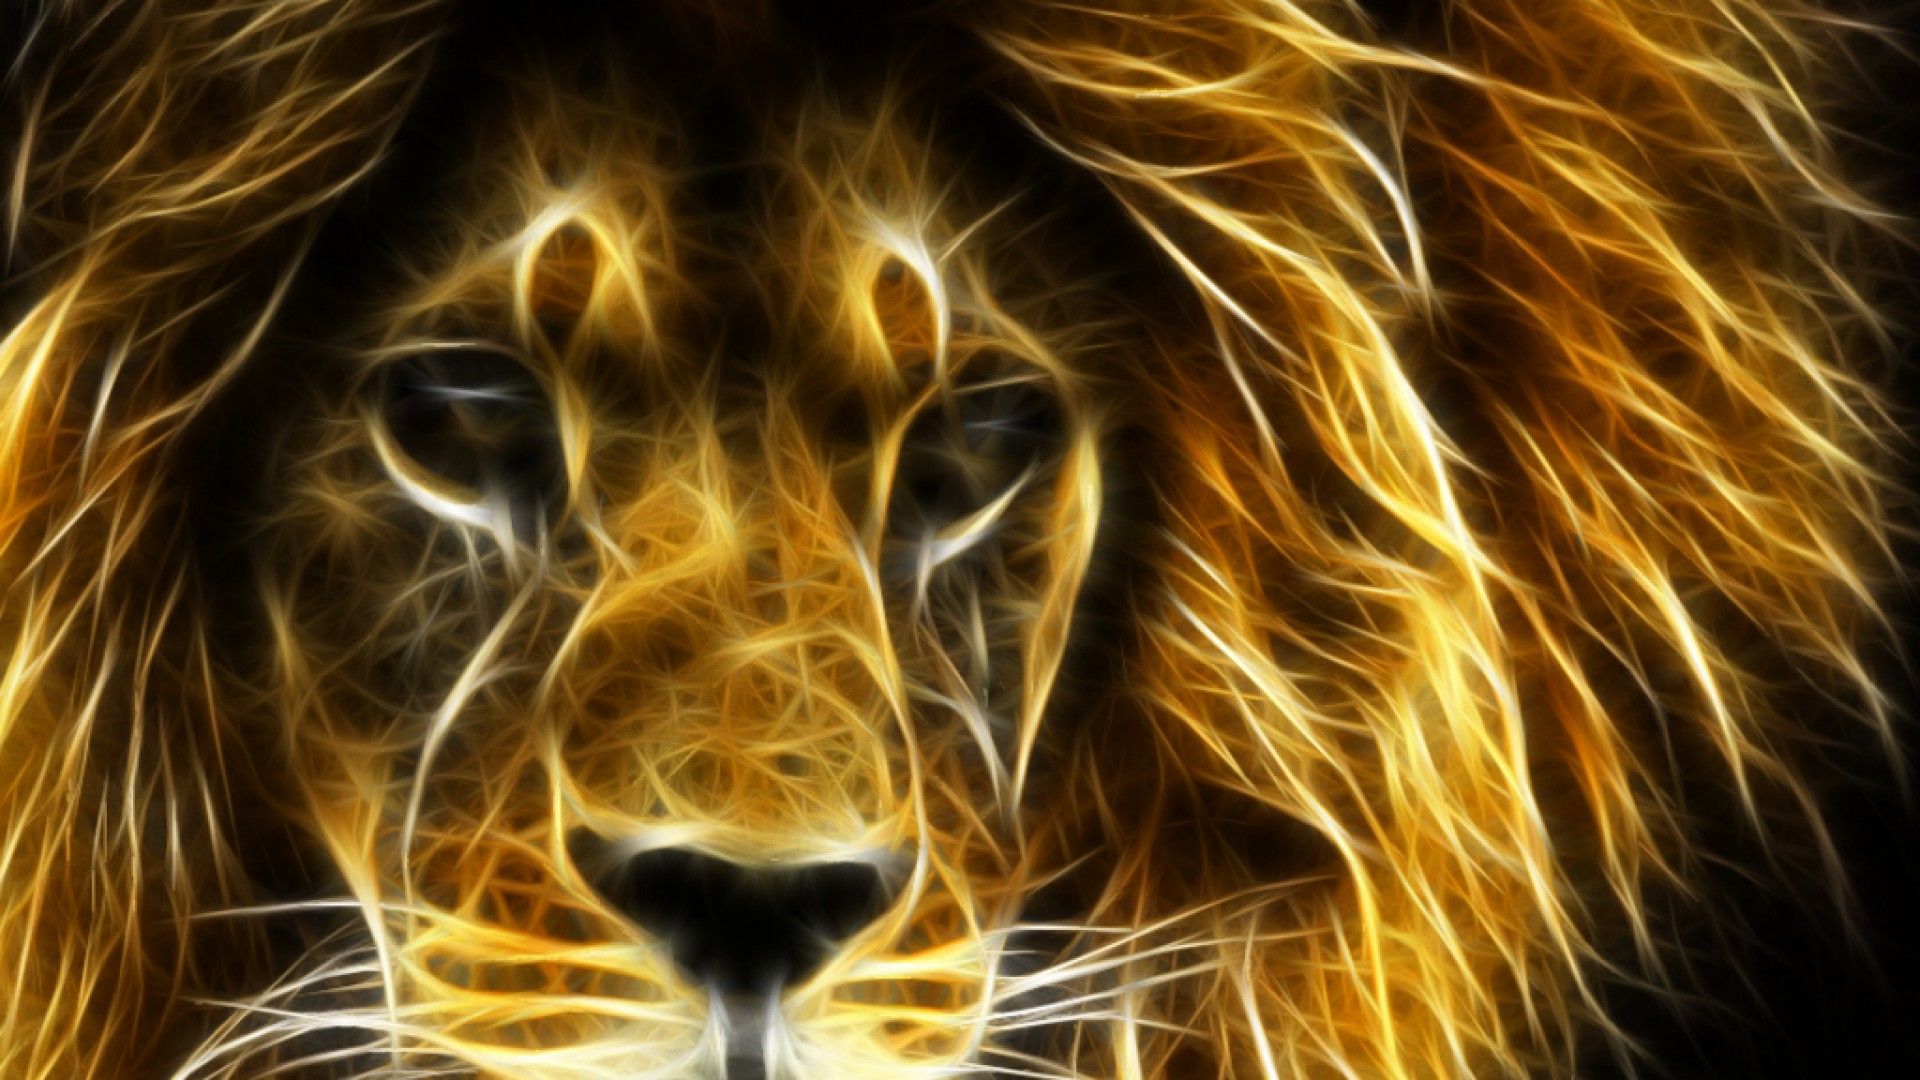 Fractal image of a lion's face - Leo